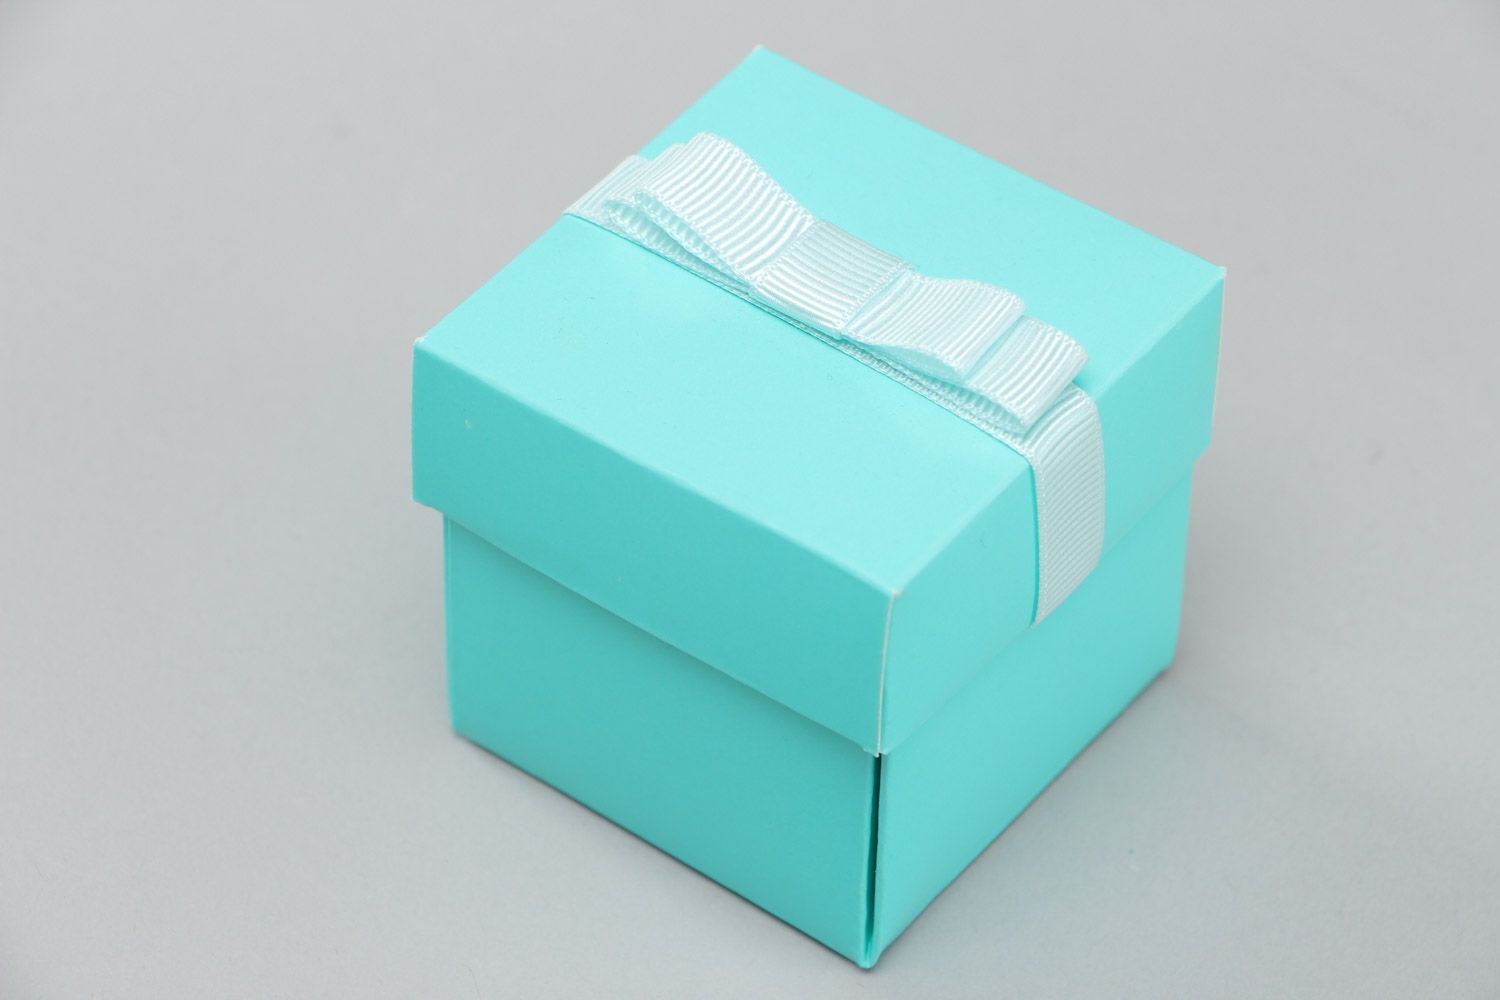 Petite bonbonnière en carton bleue faite main avec noeud en ruban cadeau photo 3